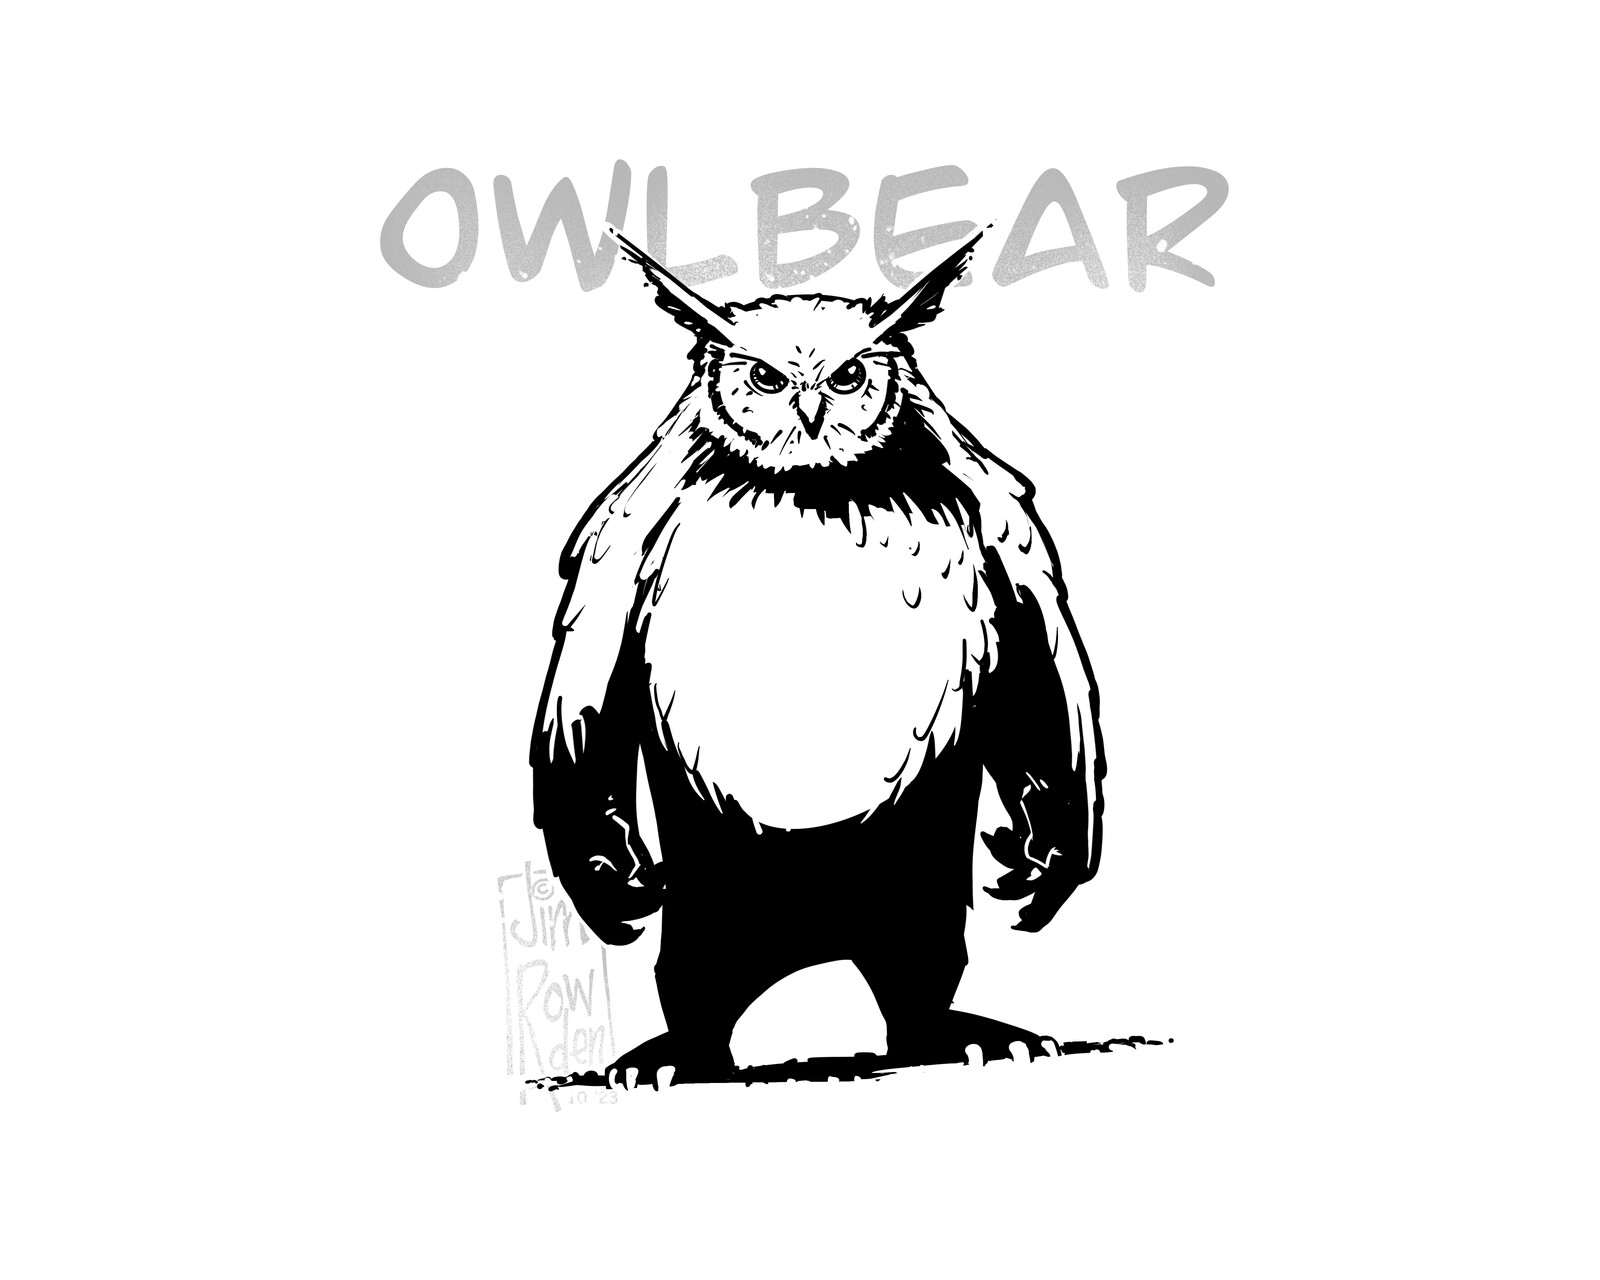 The Owlbear